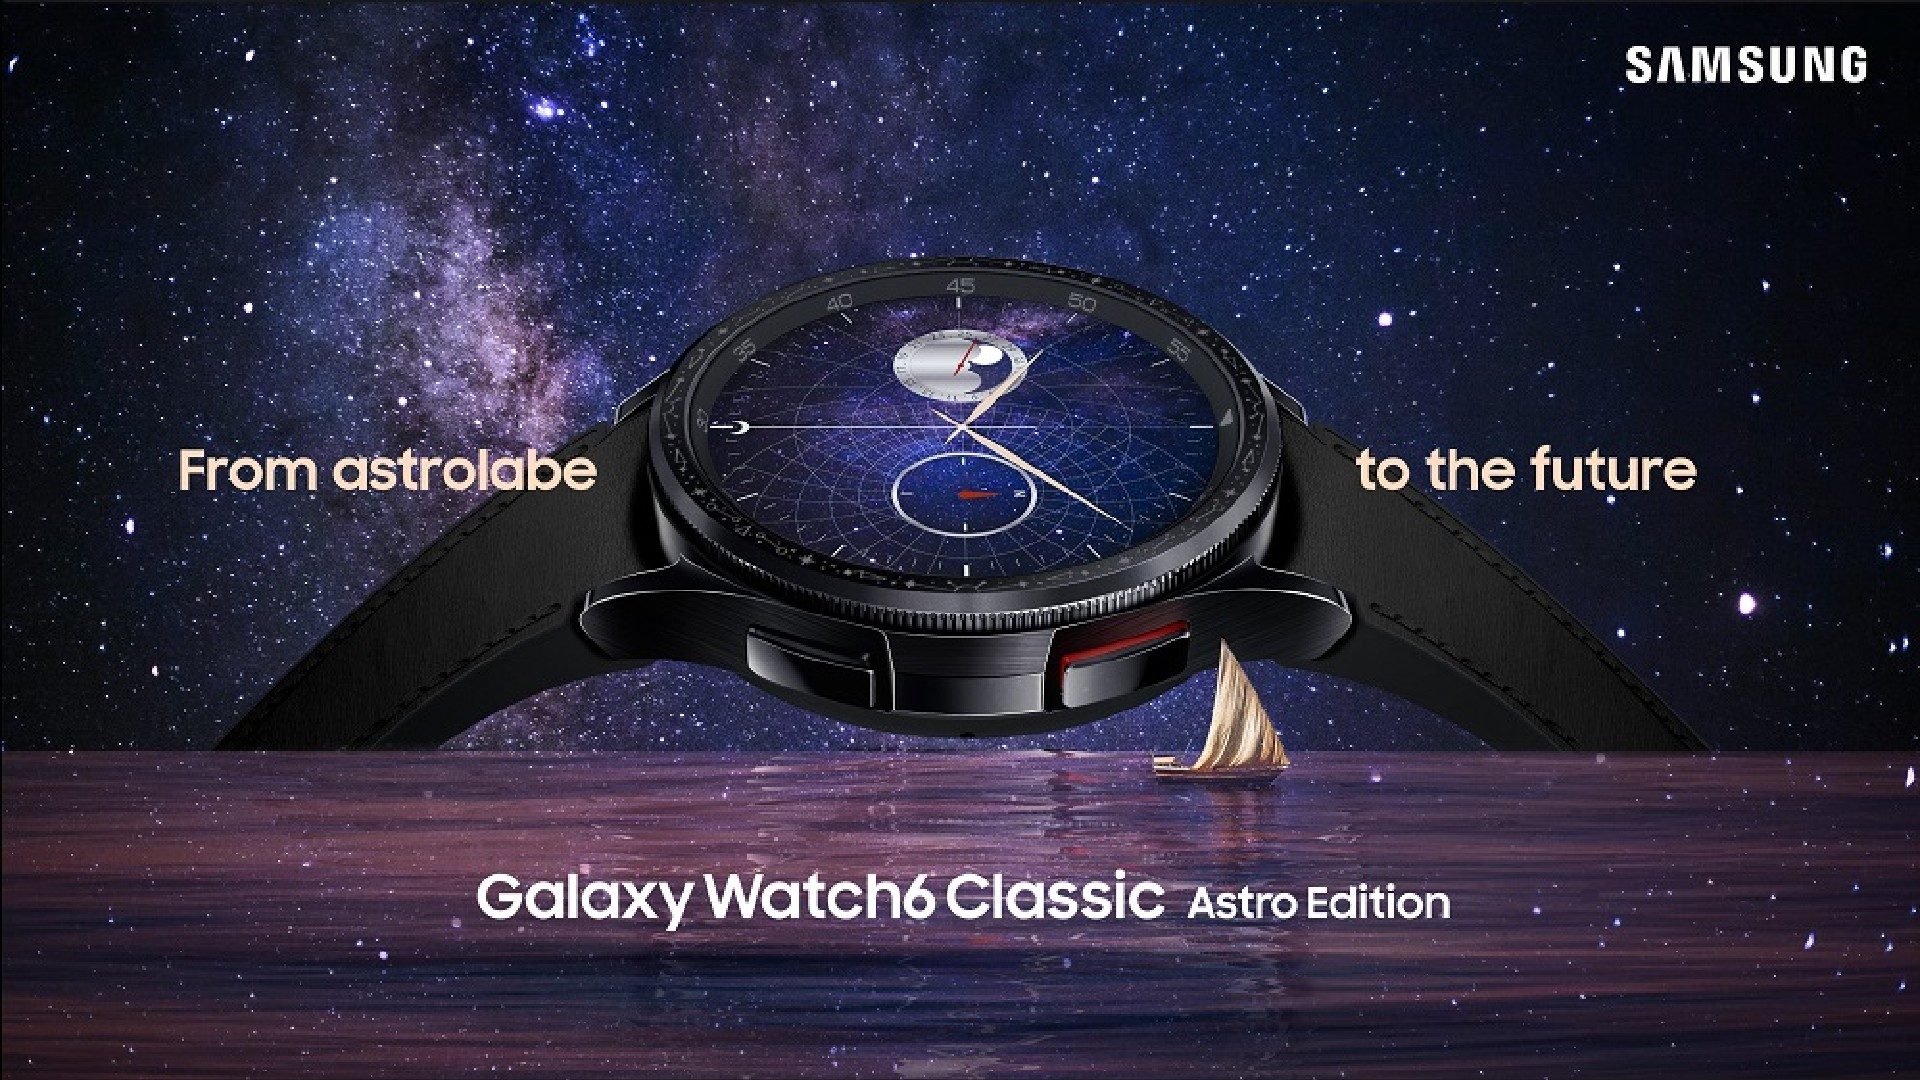 Galaxy Watch 6 (Classic): limitierte Astro Edition vorgestellt